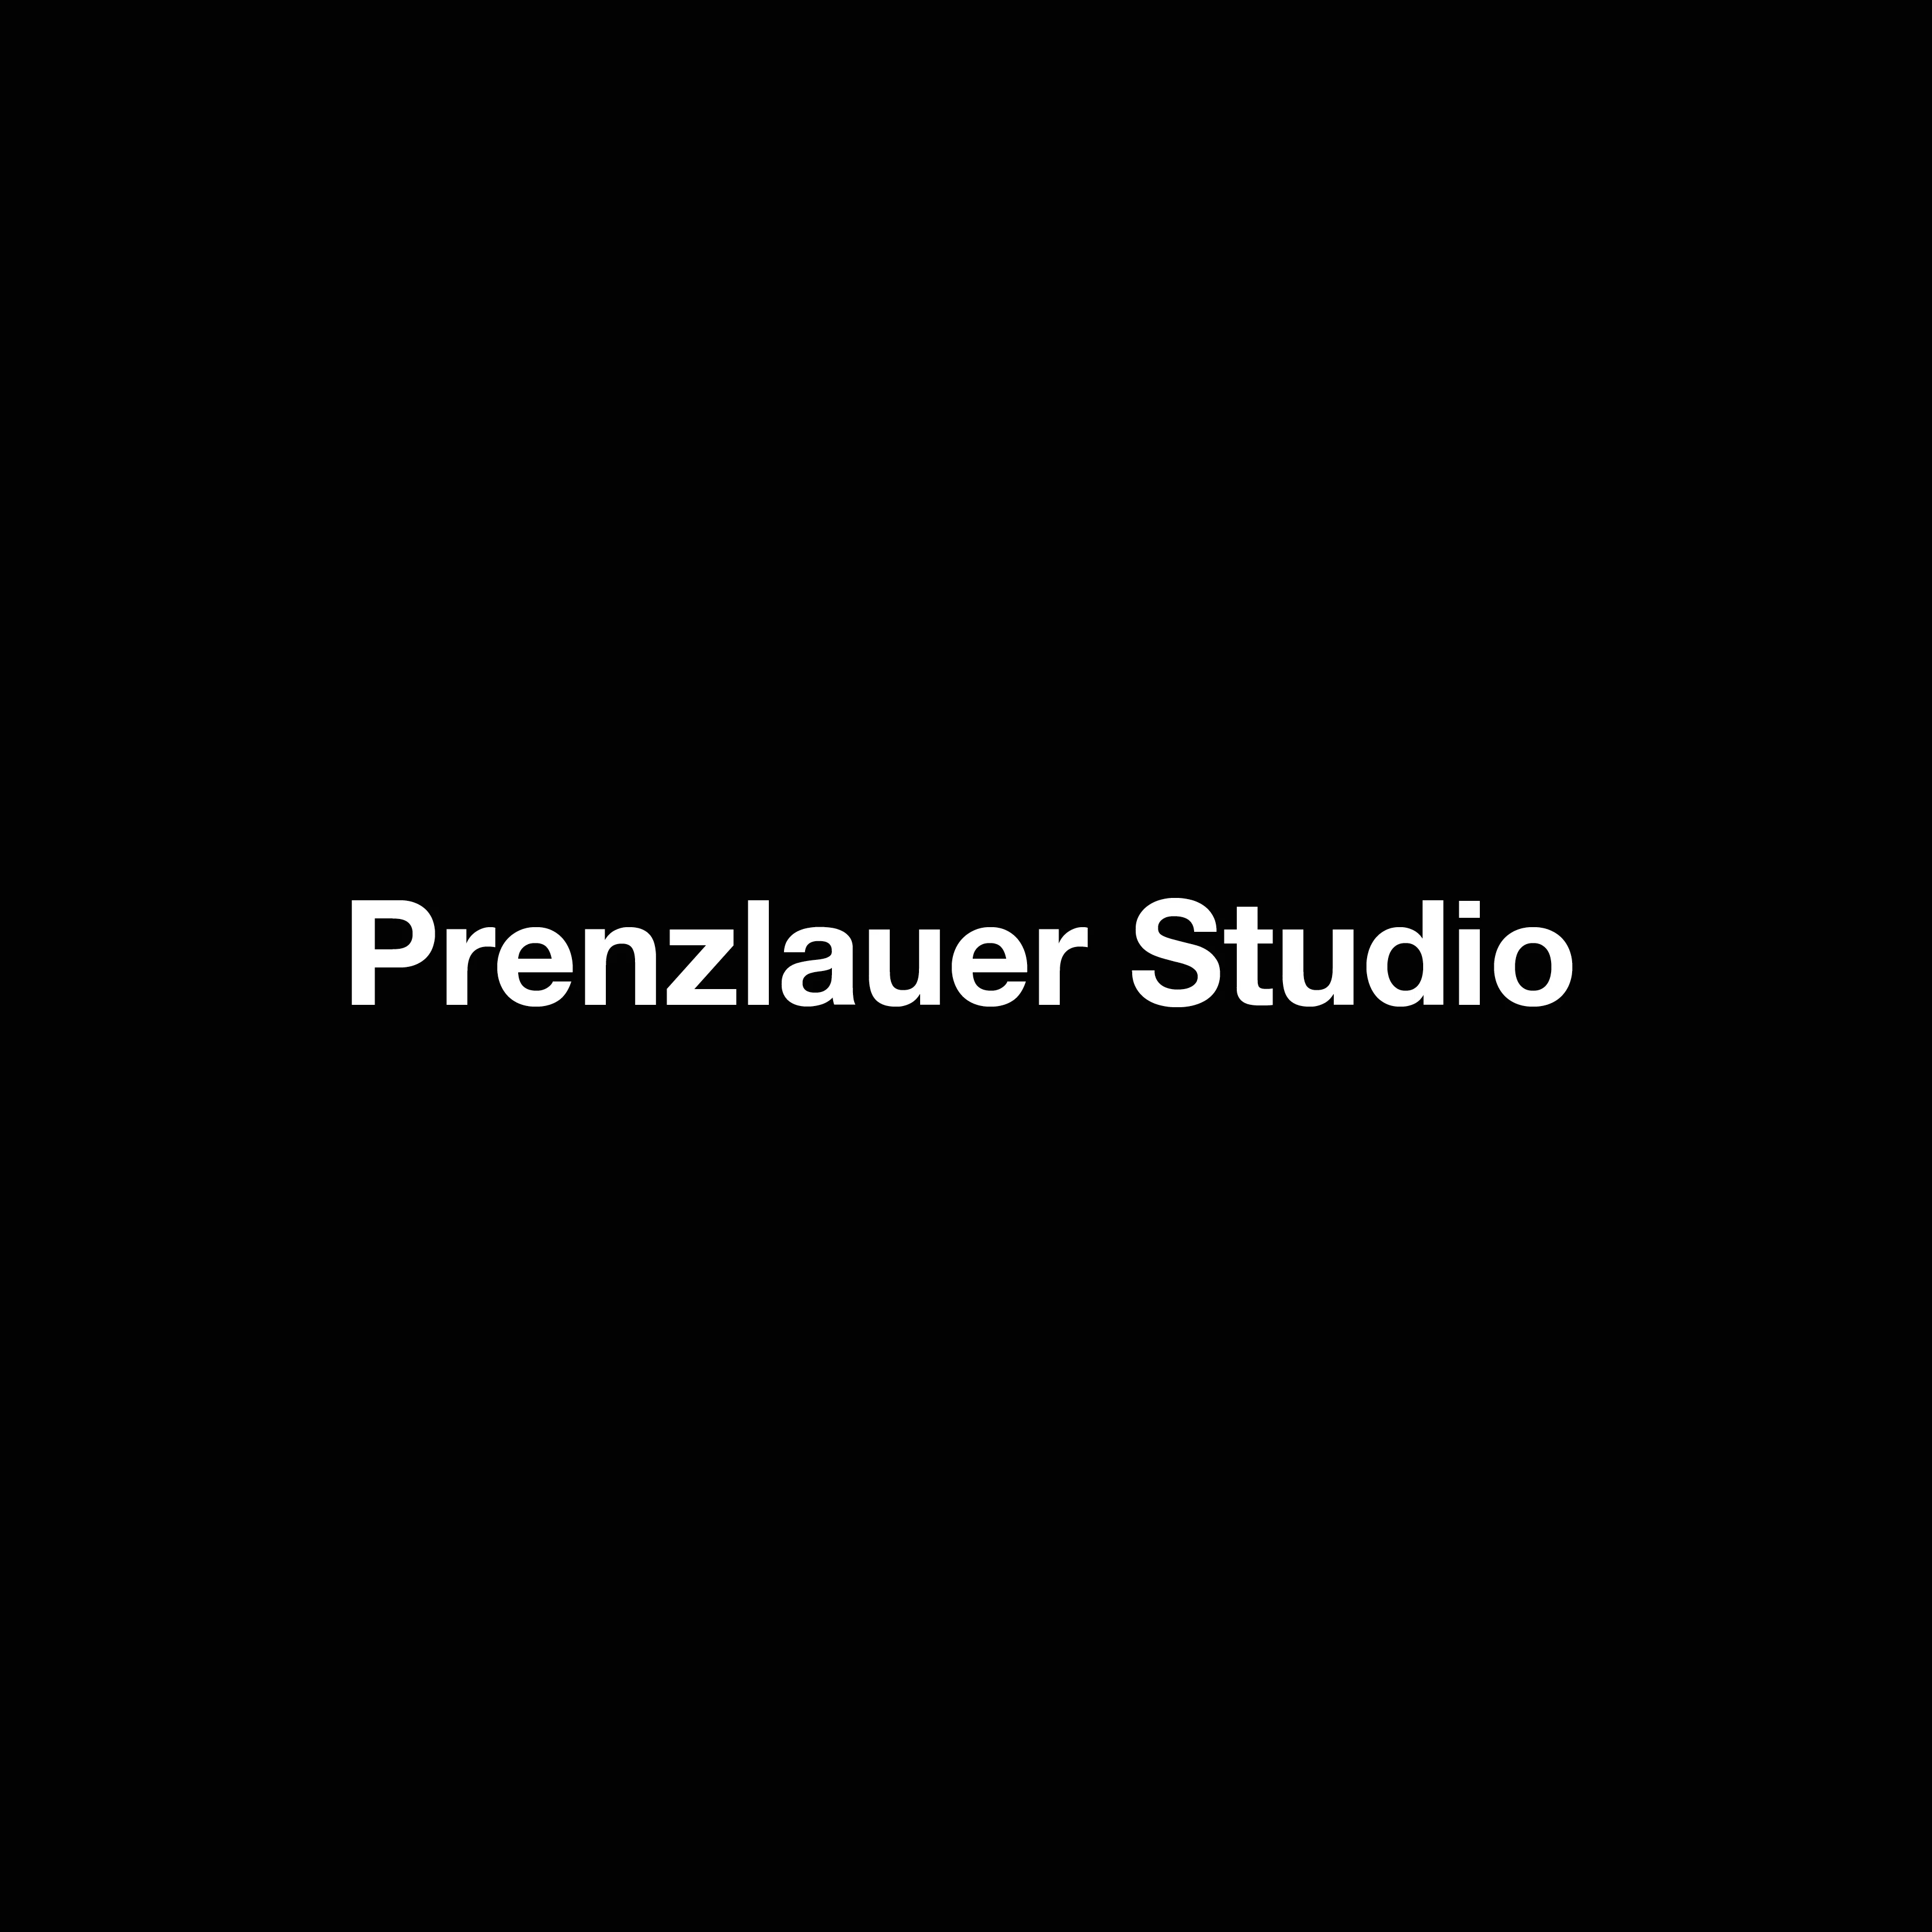 Prenzlauer Studio